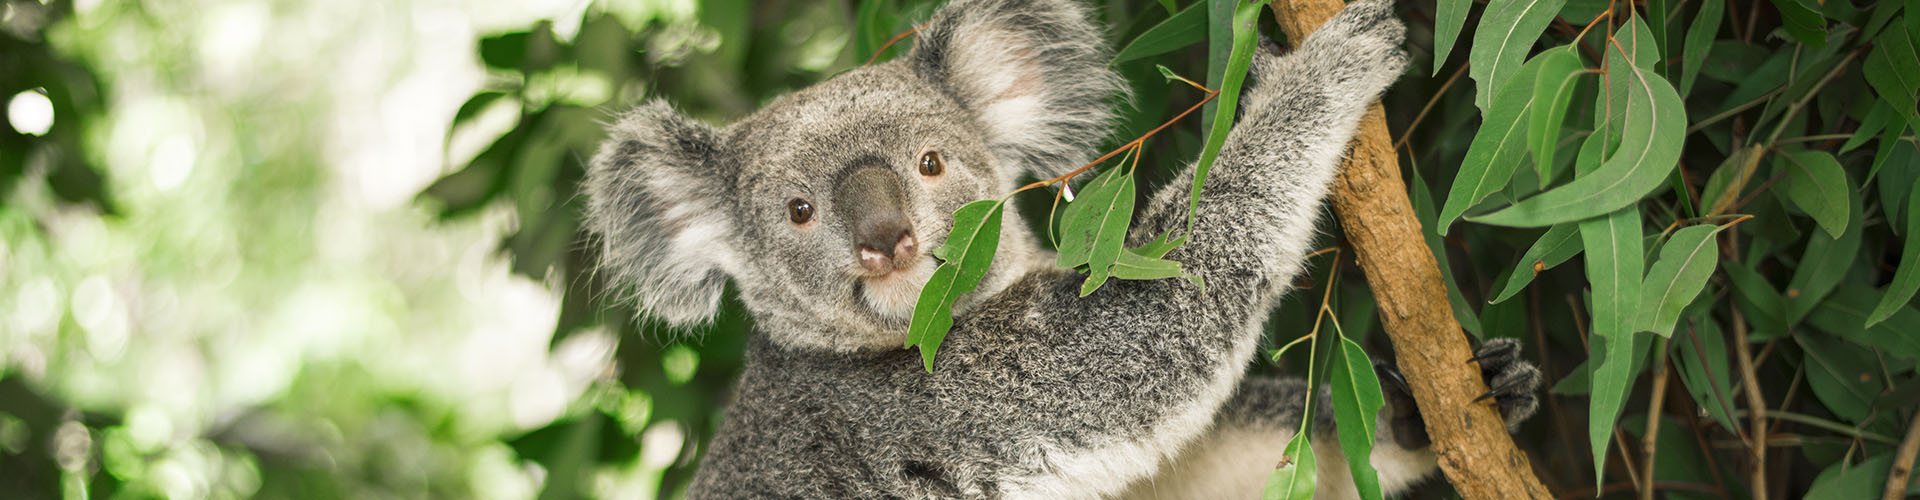 koala in a eucalyptus tree